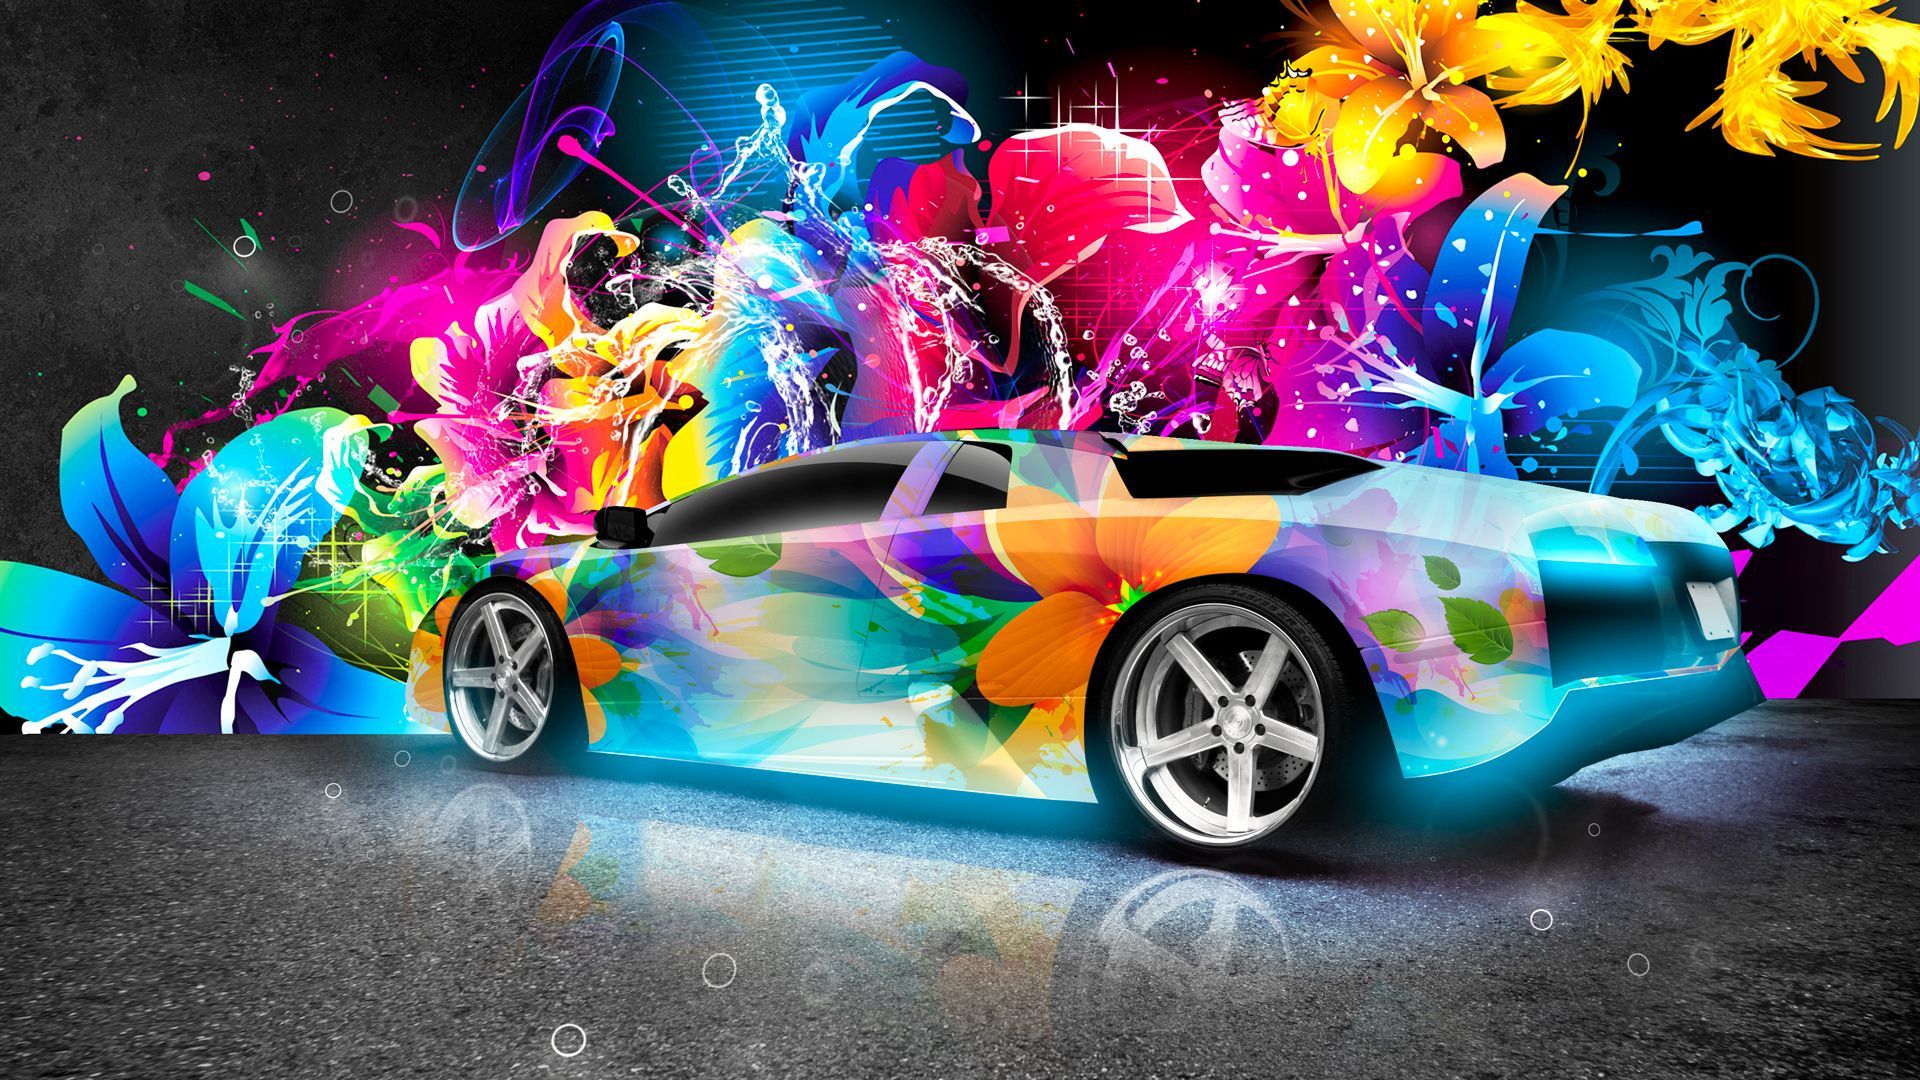 Abstract Car Wallpaper: Image